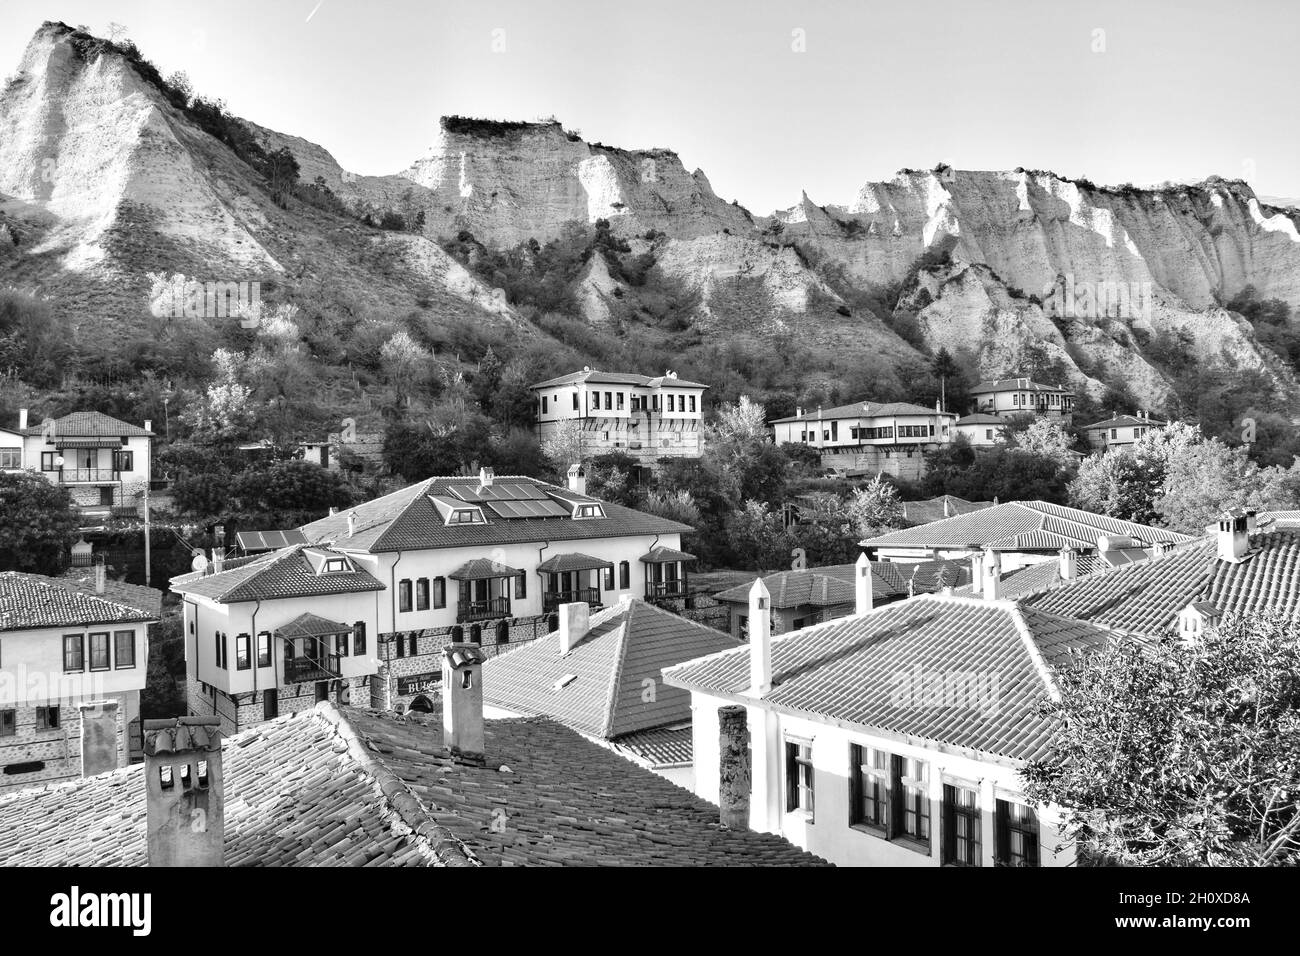 Melnik - die kleinste Stadt in Bulgarien, umarmt von den typischen Felsen der Gegend. Schöne Landschaft der kleinen Stadt aus einer hohen Sicht. Stockfoto